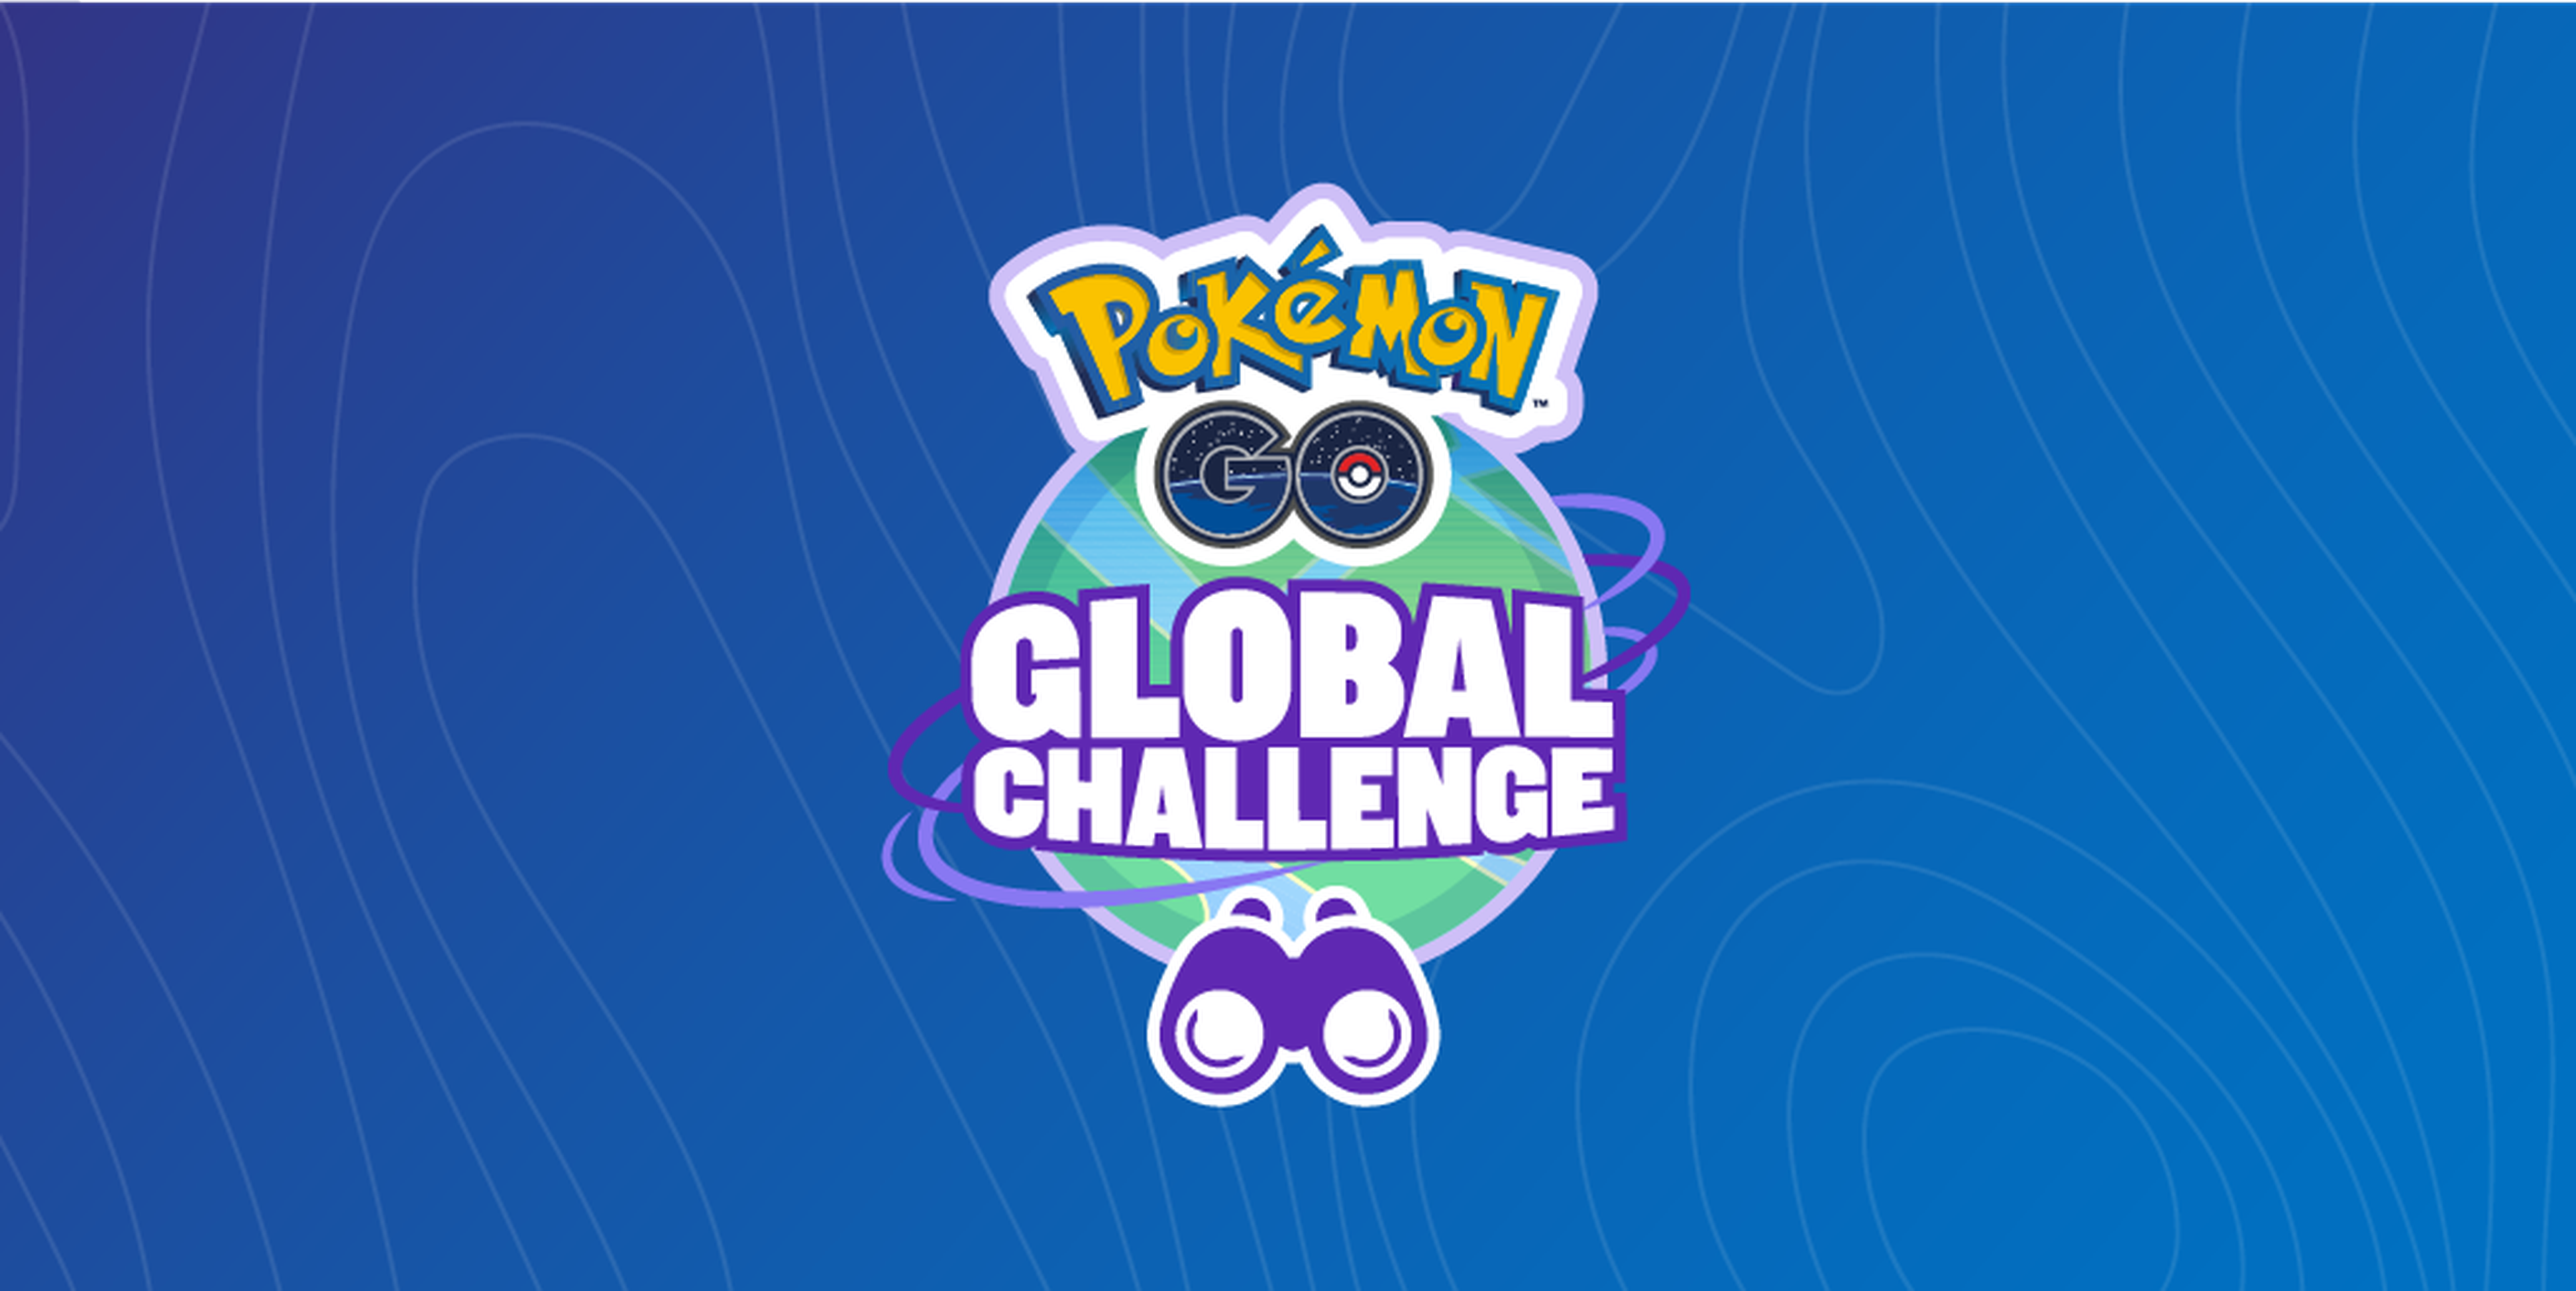 Pokemon GO: Global Challenge